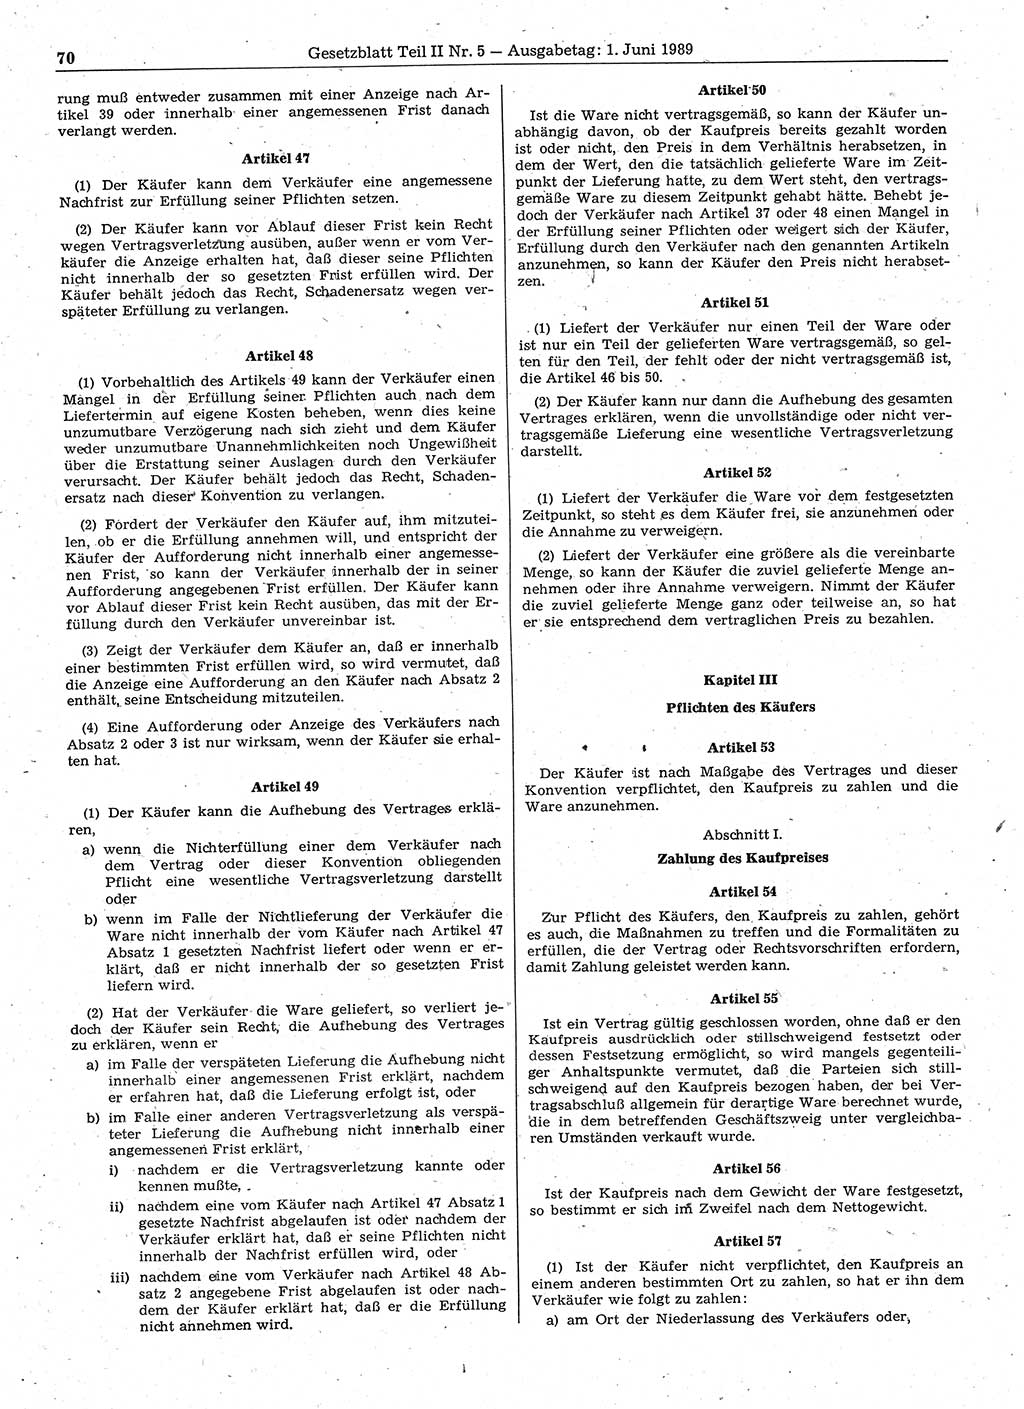 Gesetzblatt (GBl.) der Deutschen Demokratischen Republik (DDR) Teil ⅠⅠ 1989, Seite 70 (GBl. DDR ⅠⅠ 1989, S. 70)